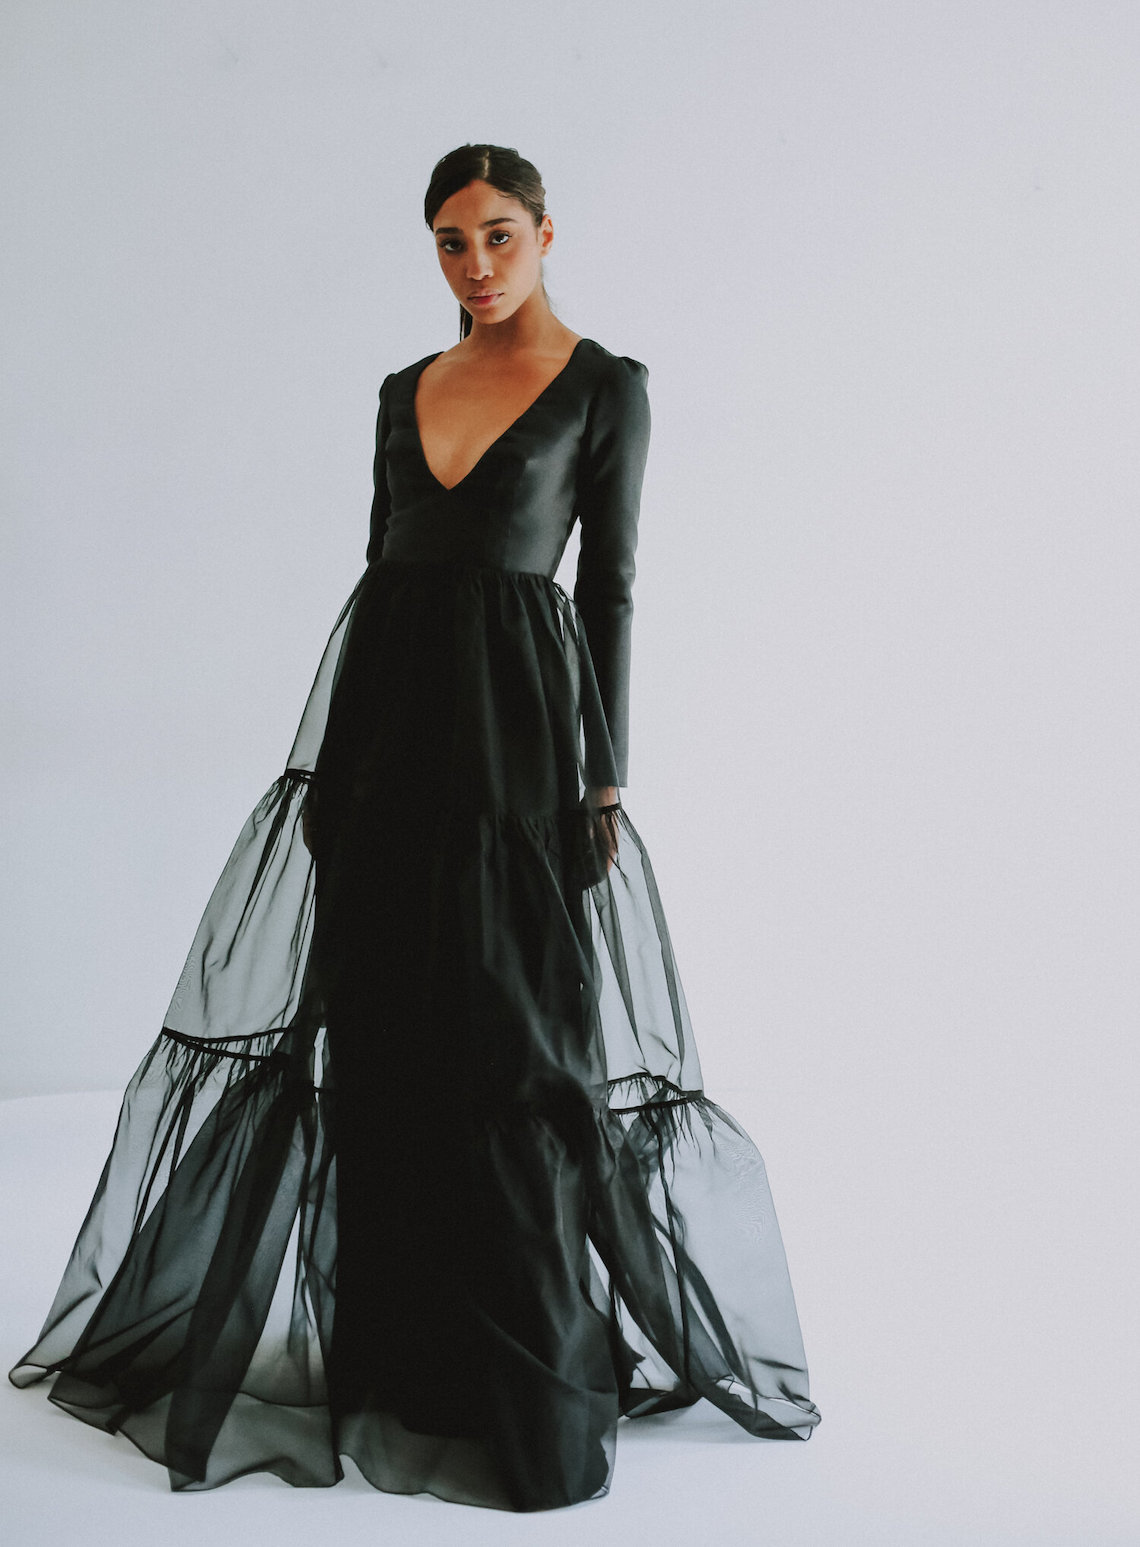 Leanne Marshall Long Sleeve Black Wedding Dress Gorgeous Black Wedding Dresses for the Alternative Bride Bridal Musings - 30 chiếc váy cưới màu đen mà chúng tôi yêu thích cho cô dâu thay thế